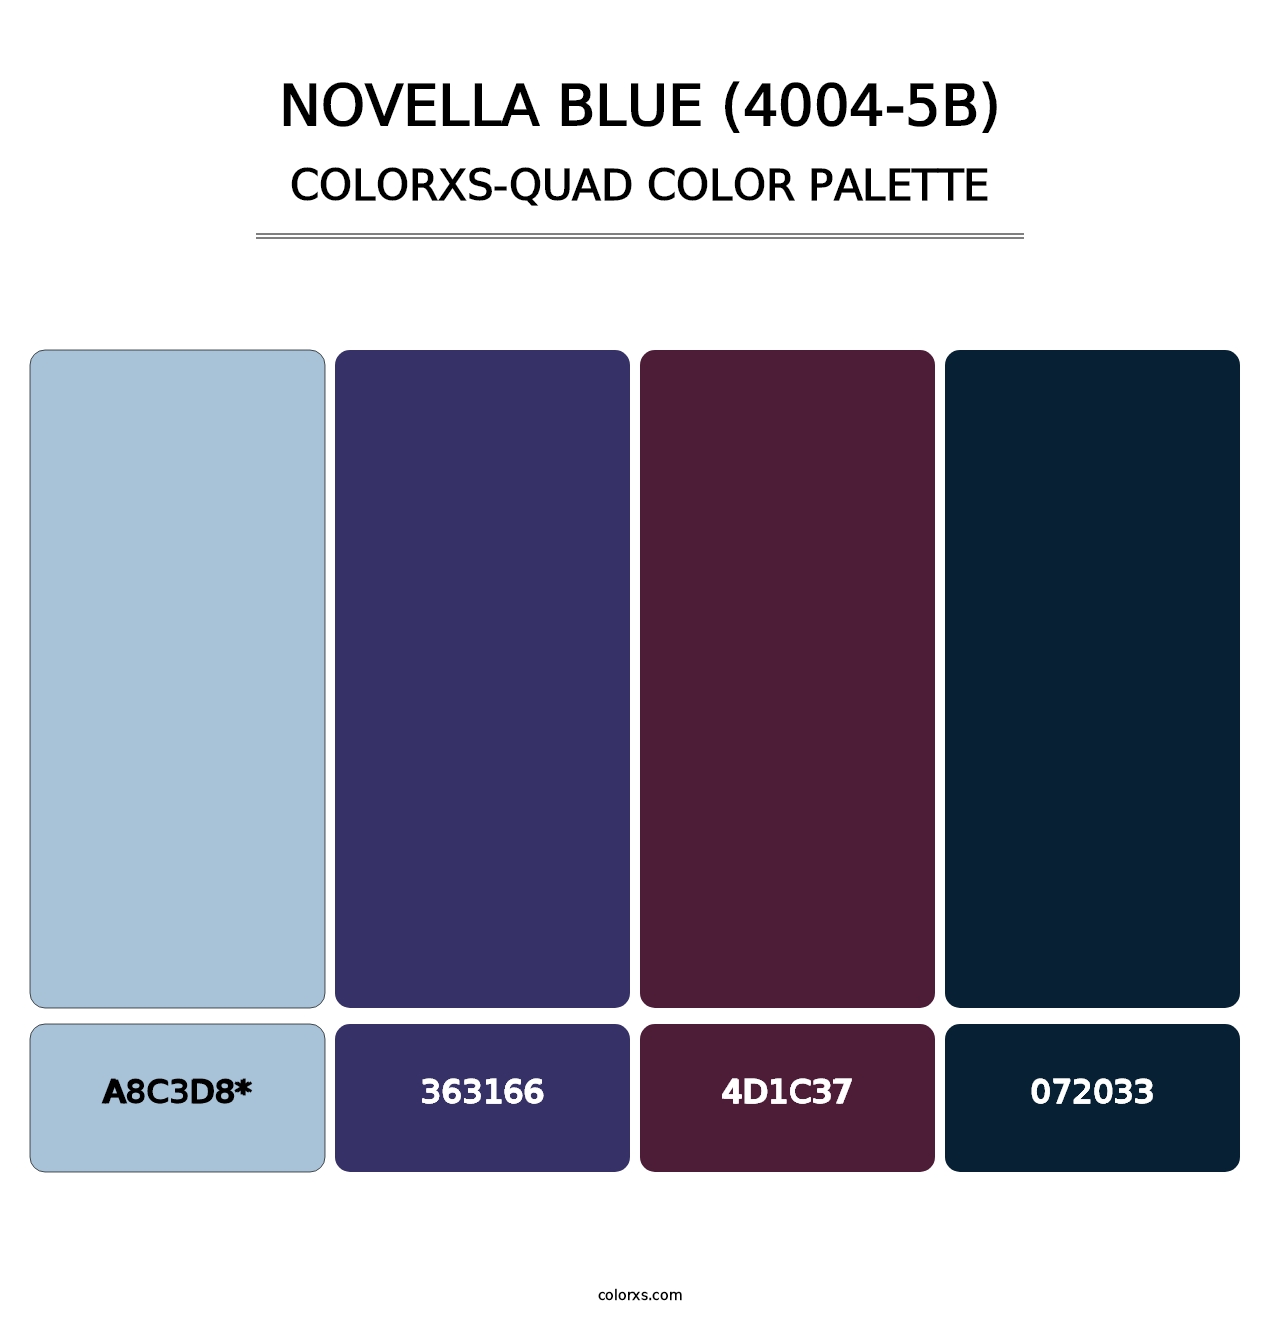 Novella Blue (4004-5B) - Colorxs Quad Palette